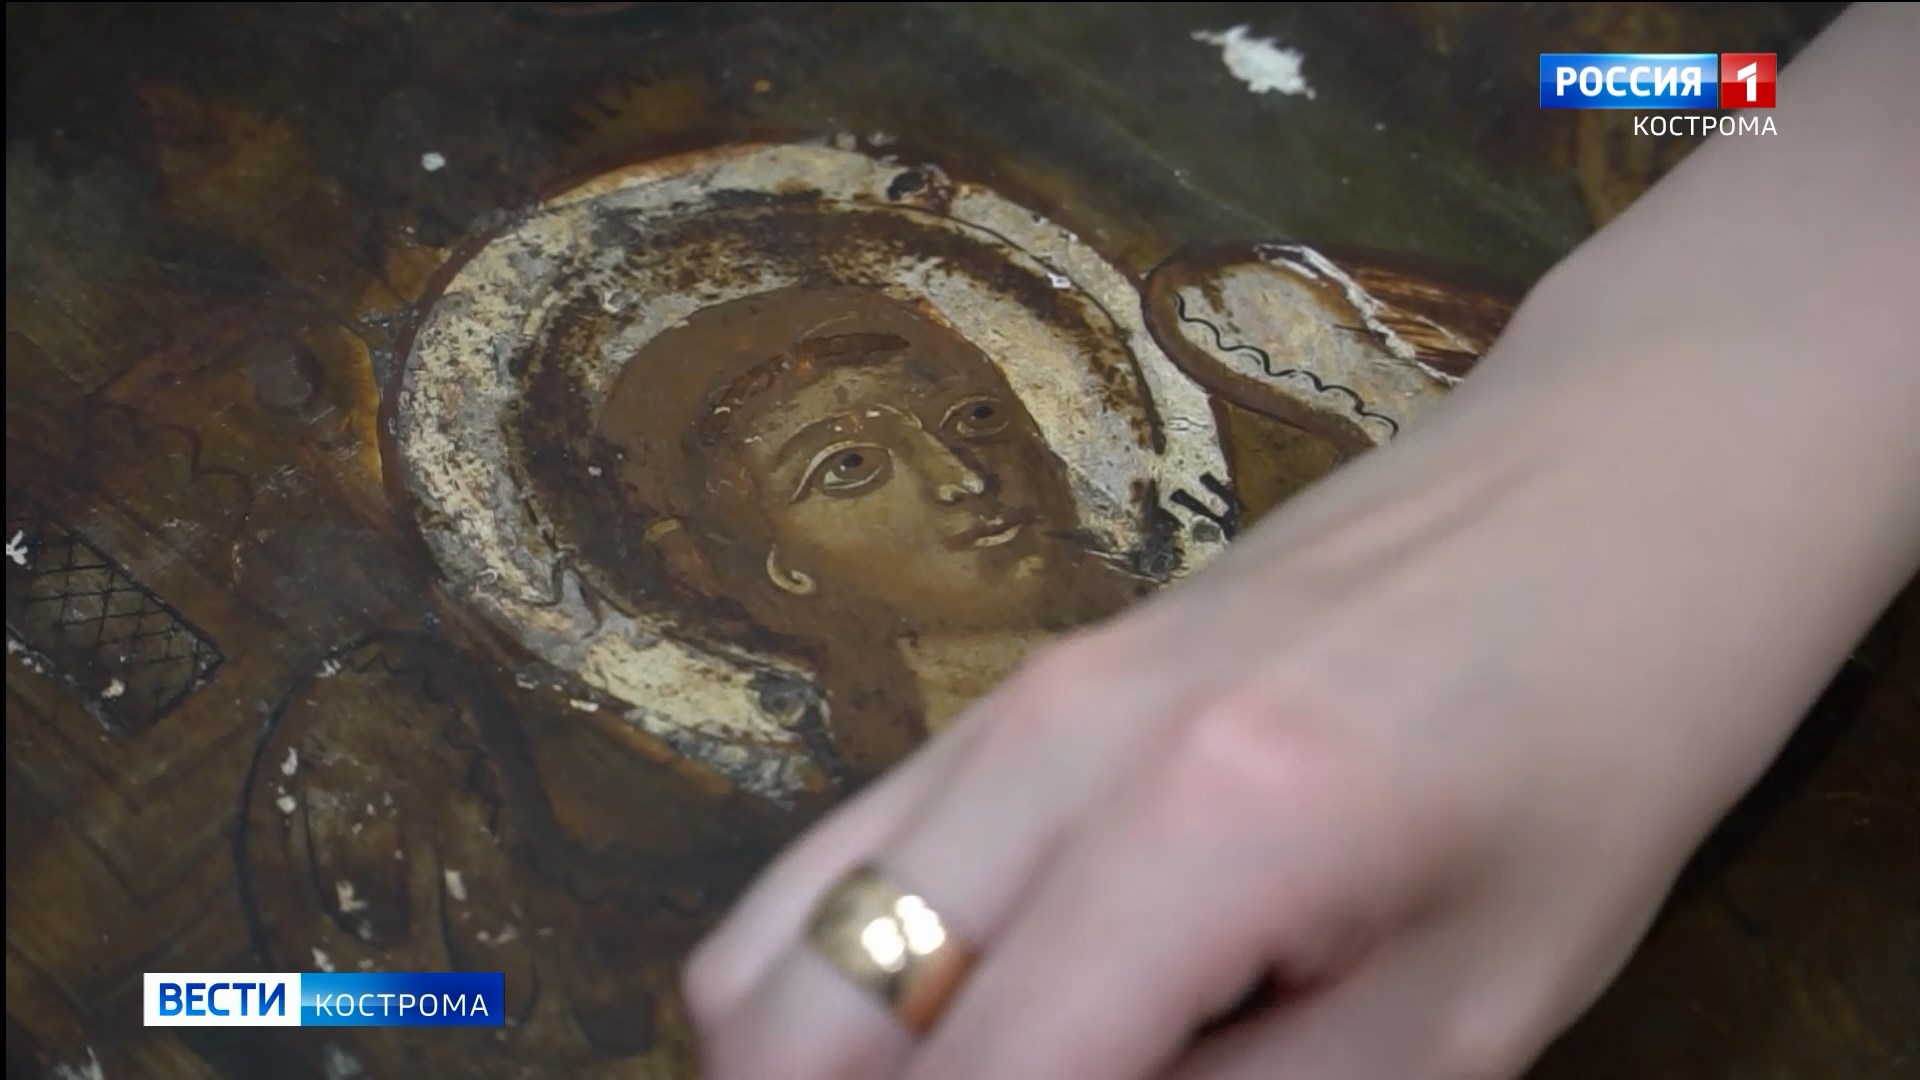 Кострома может стать реставрационным центром древних икон из малых городов России